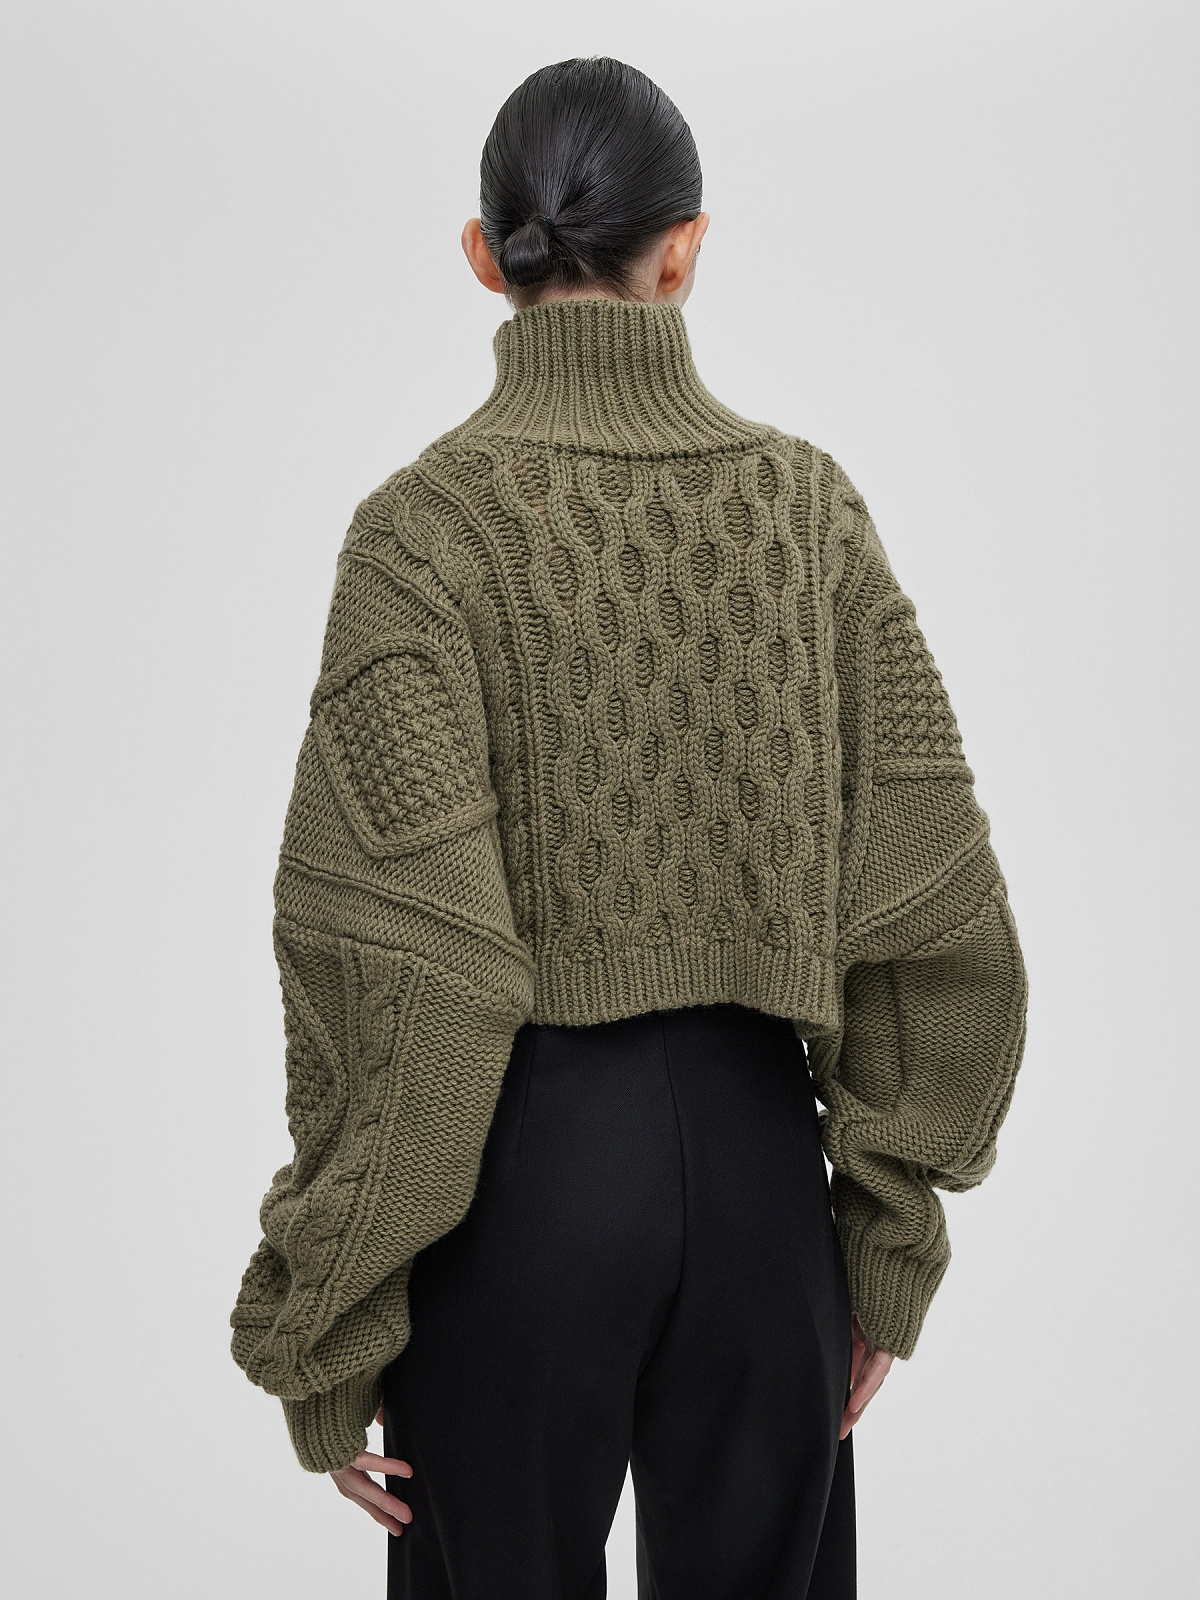 Кроп-свитер крупной вязки с аранами, светлый хаки